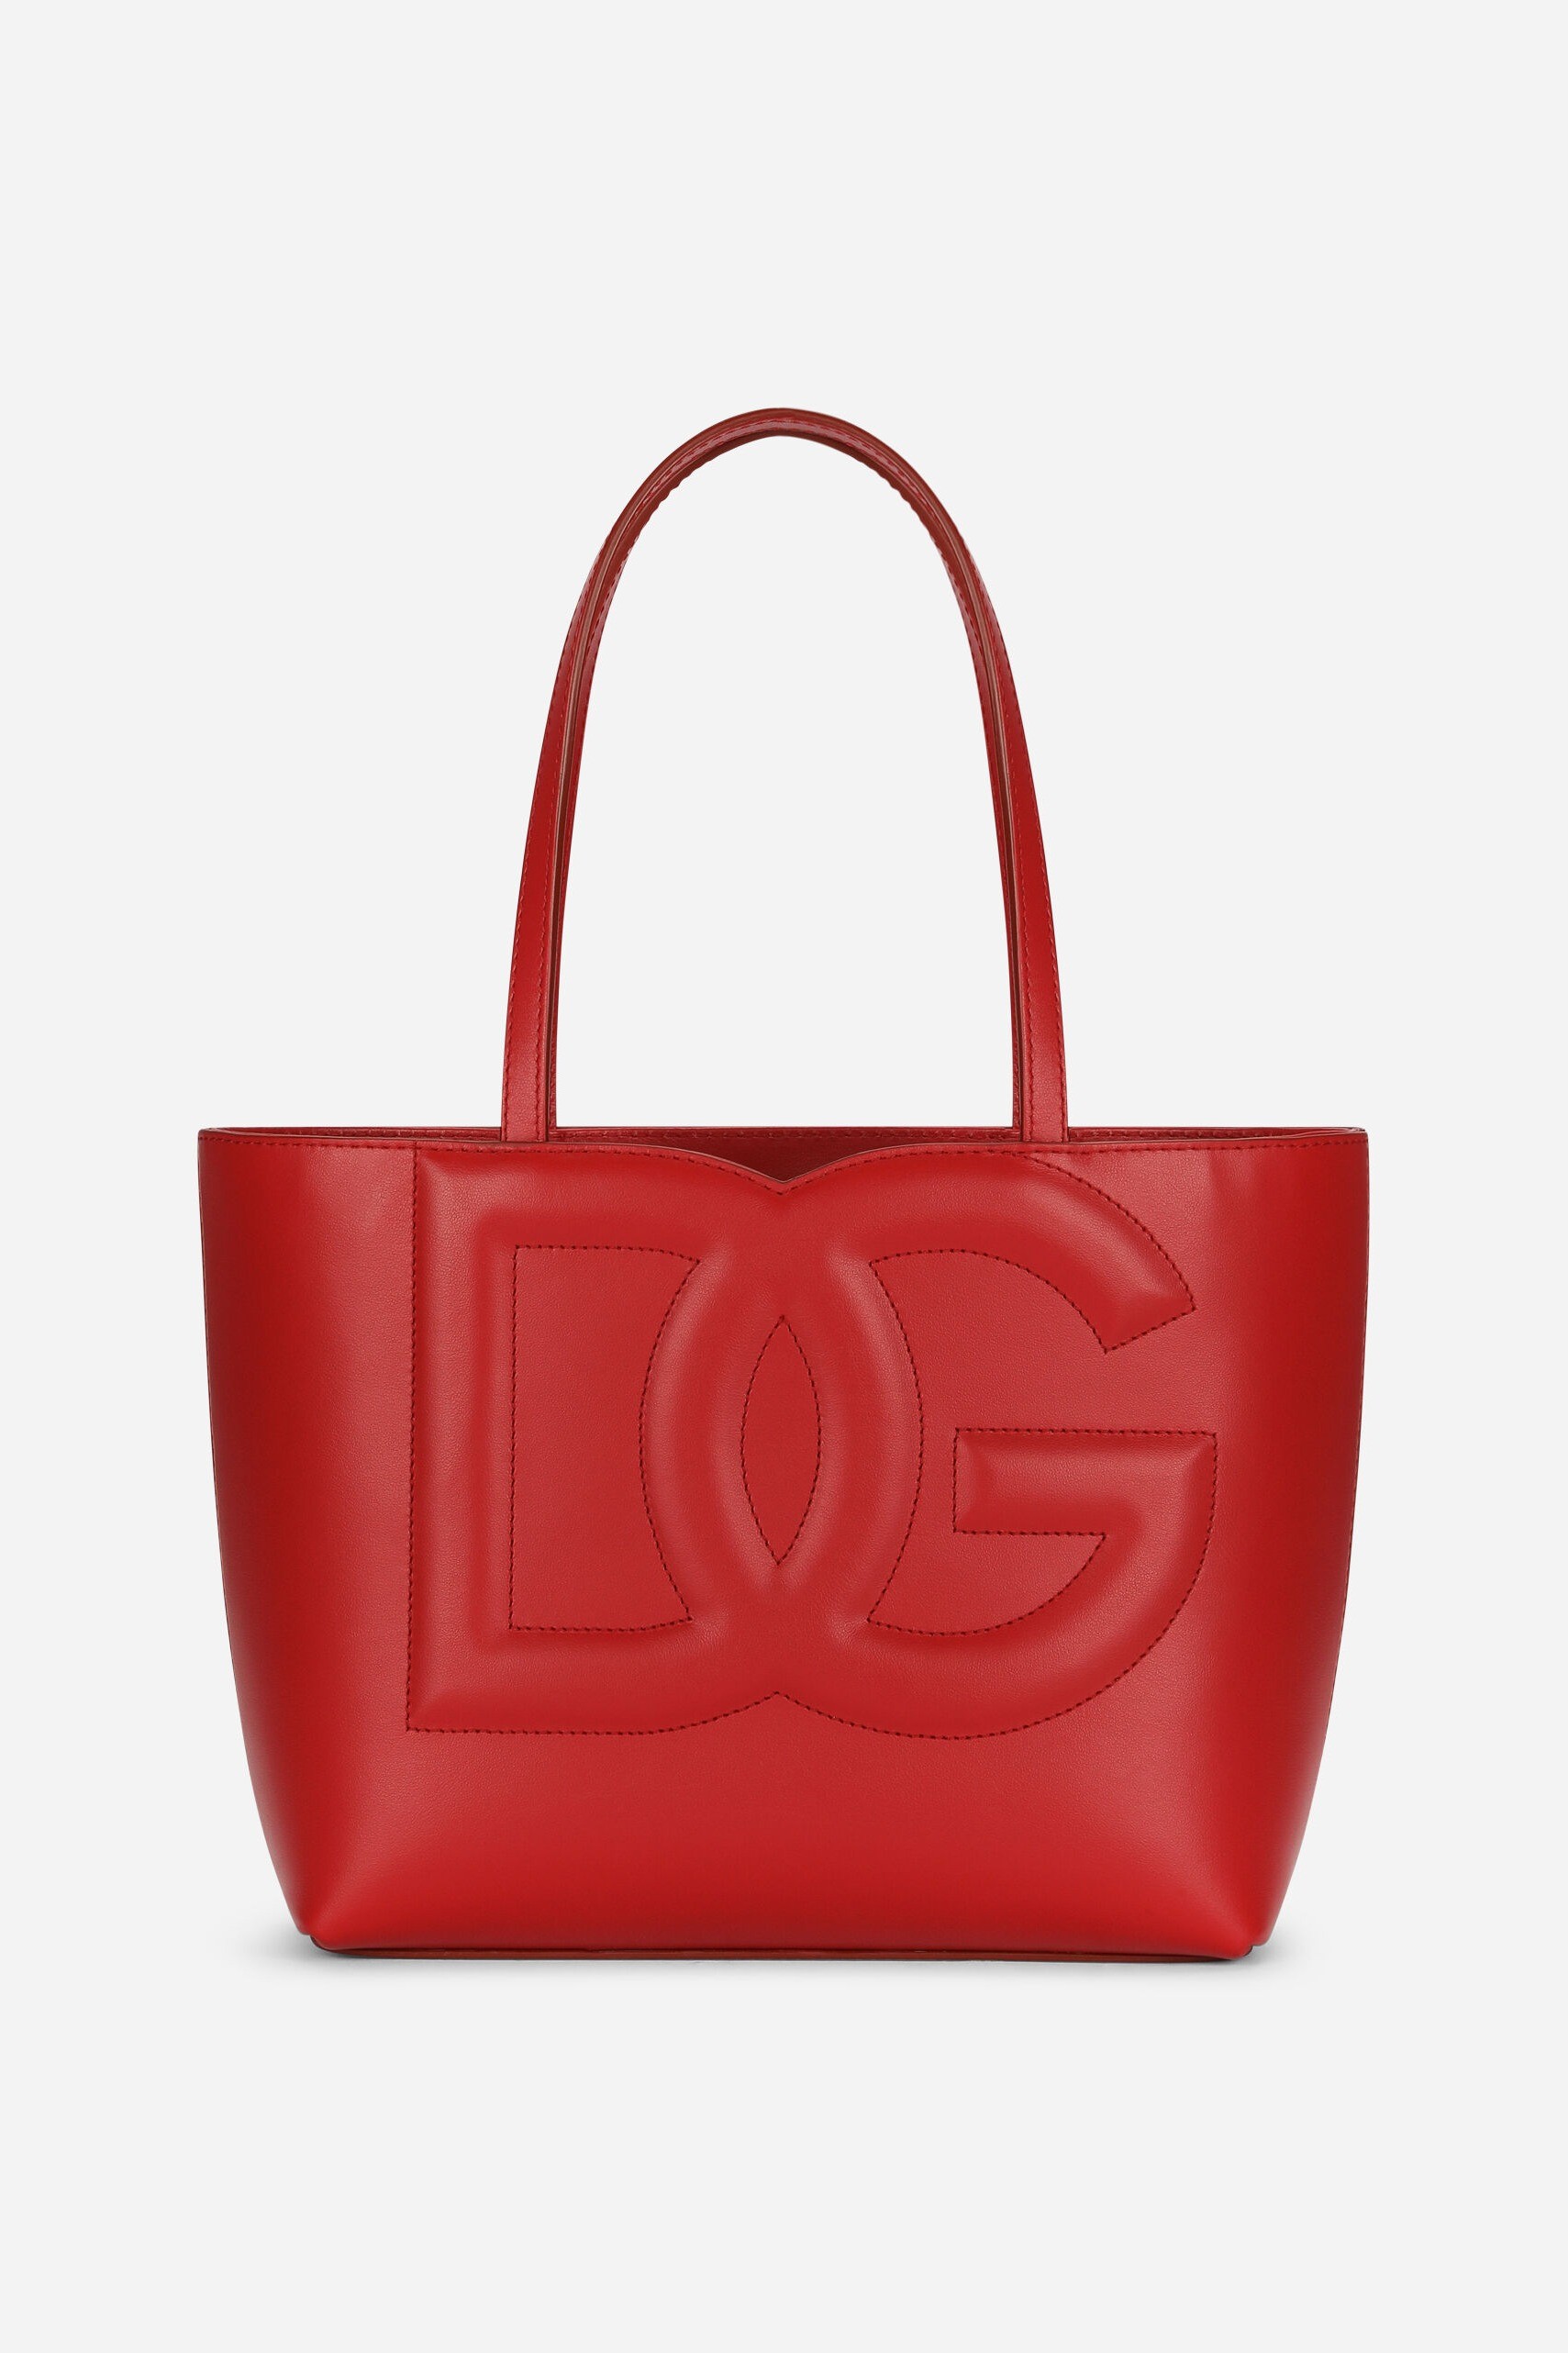 Dolce & Gabbana - SMALL CALFSKIN DG LOGO SHOPPER - Red